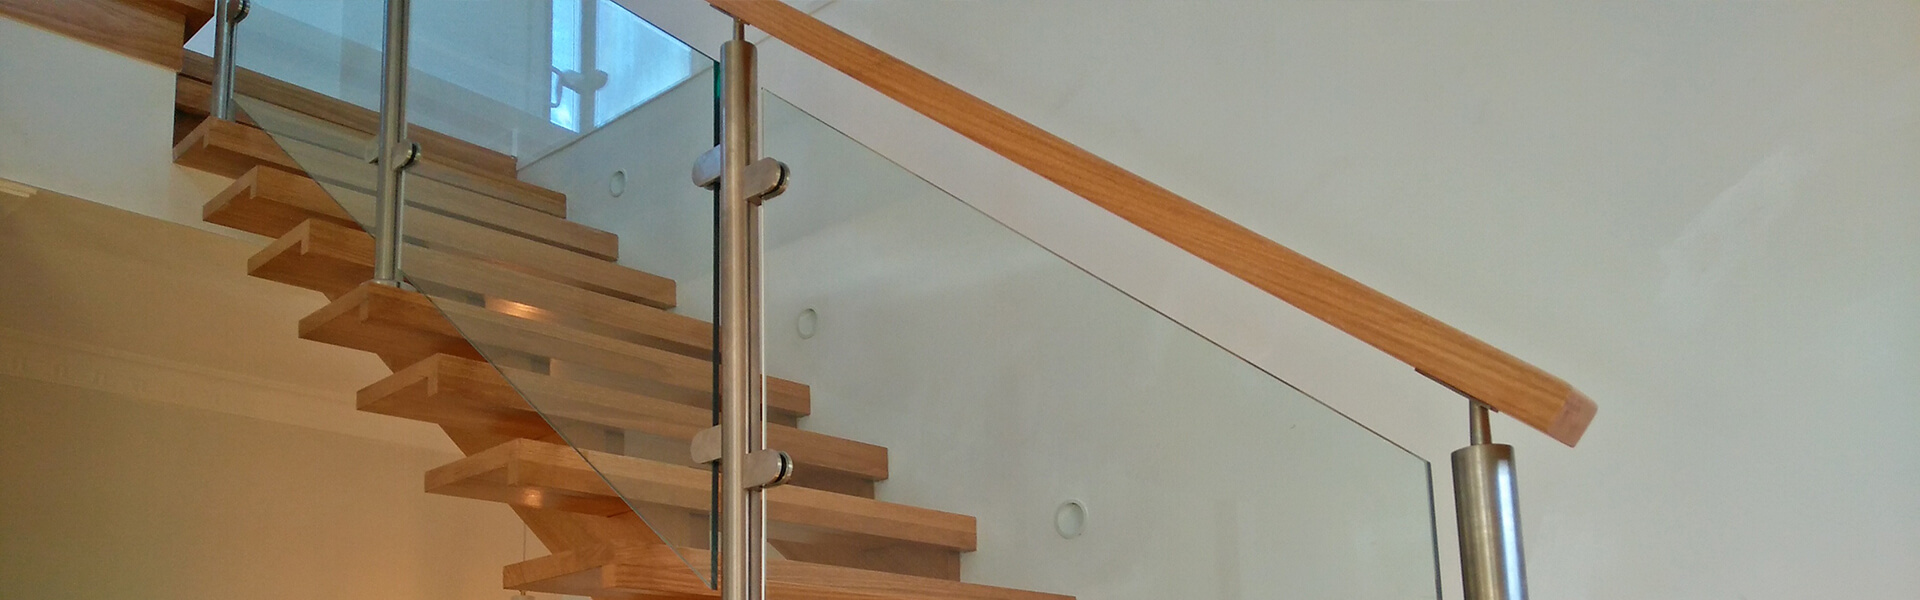 schody drewniane wewnętrzne proste bez podstopni, nakładane, balustrady szklane, poręcze drewniane